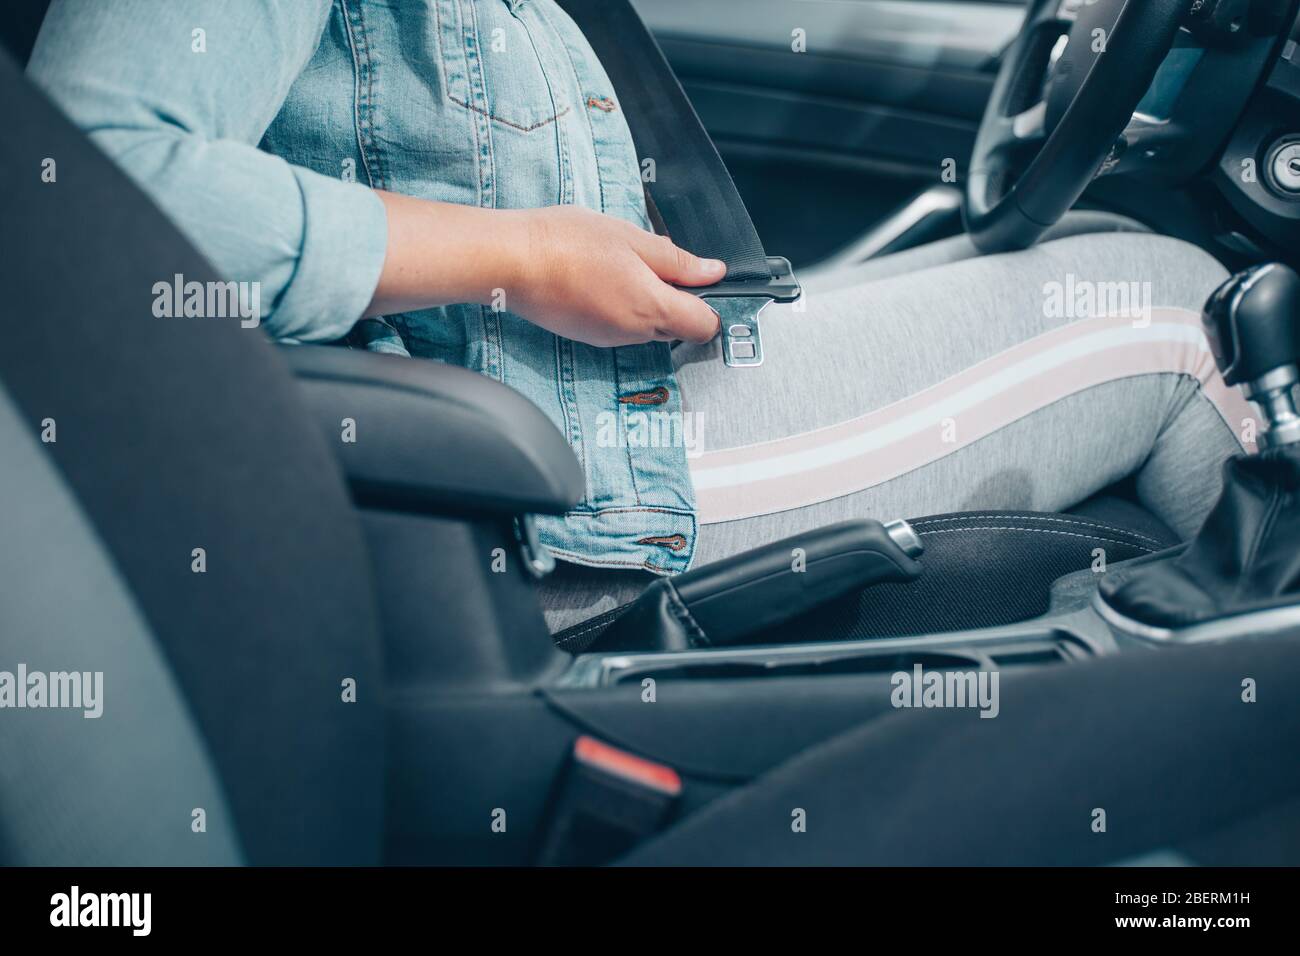 Gurtschnalle. Sicherheitssystem Im Auto. Stockfoto - Bild von erweiterung,  automobil: 246927906